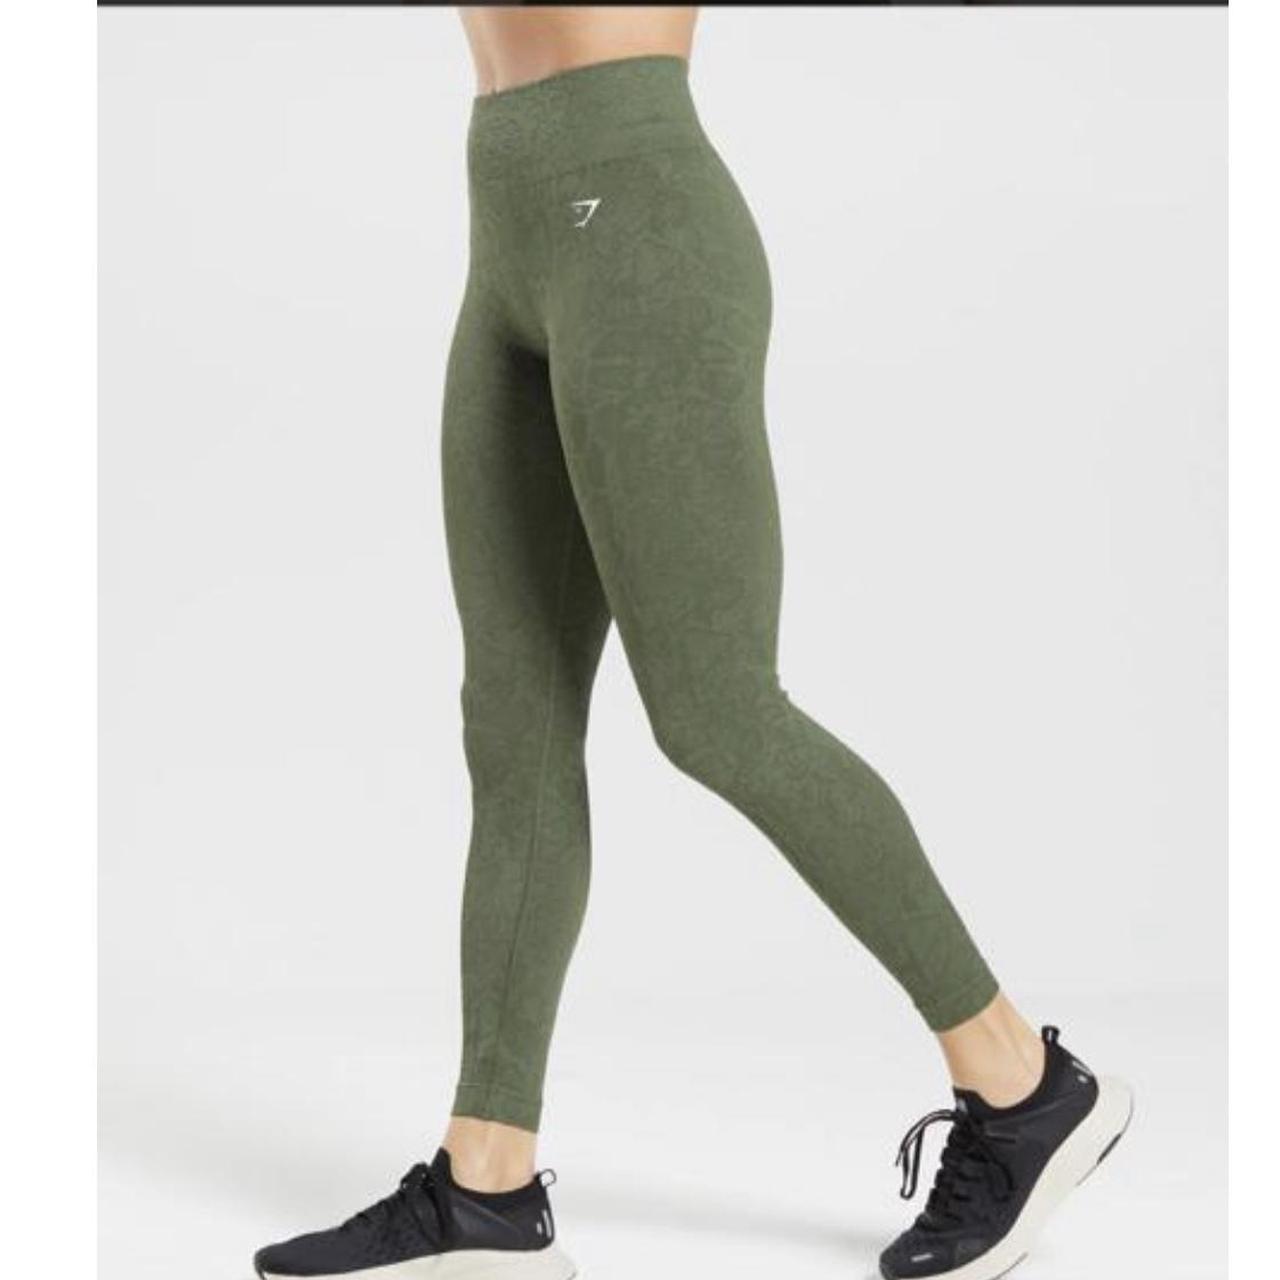 do not buy 🦈Gymshark adapt marl seamless leggings - Depop